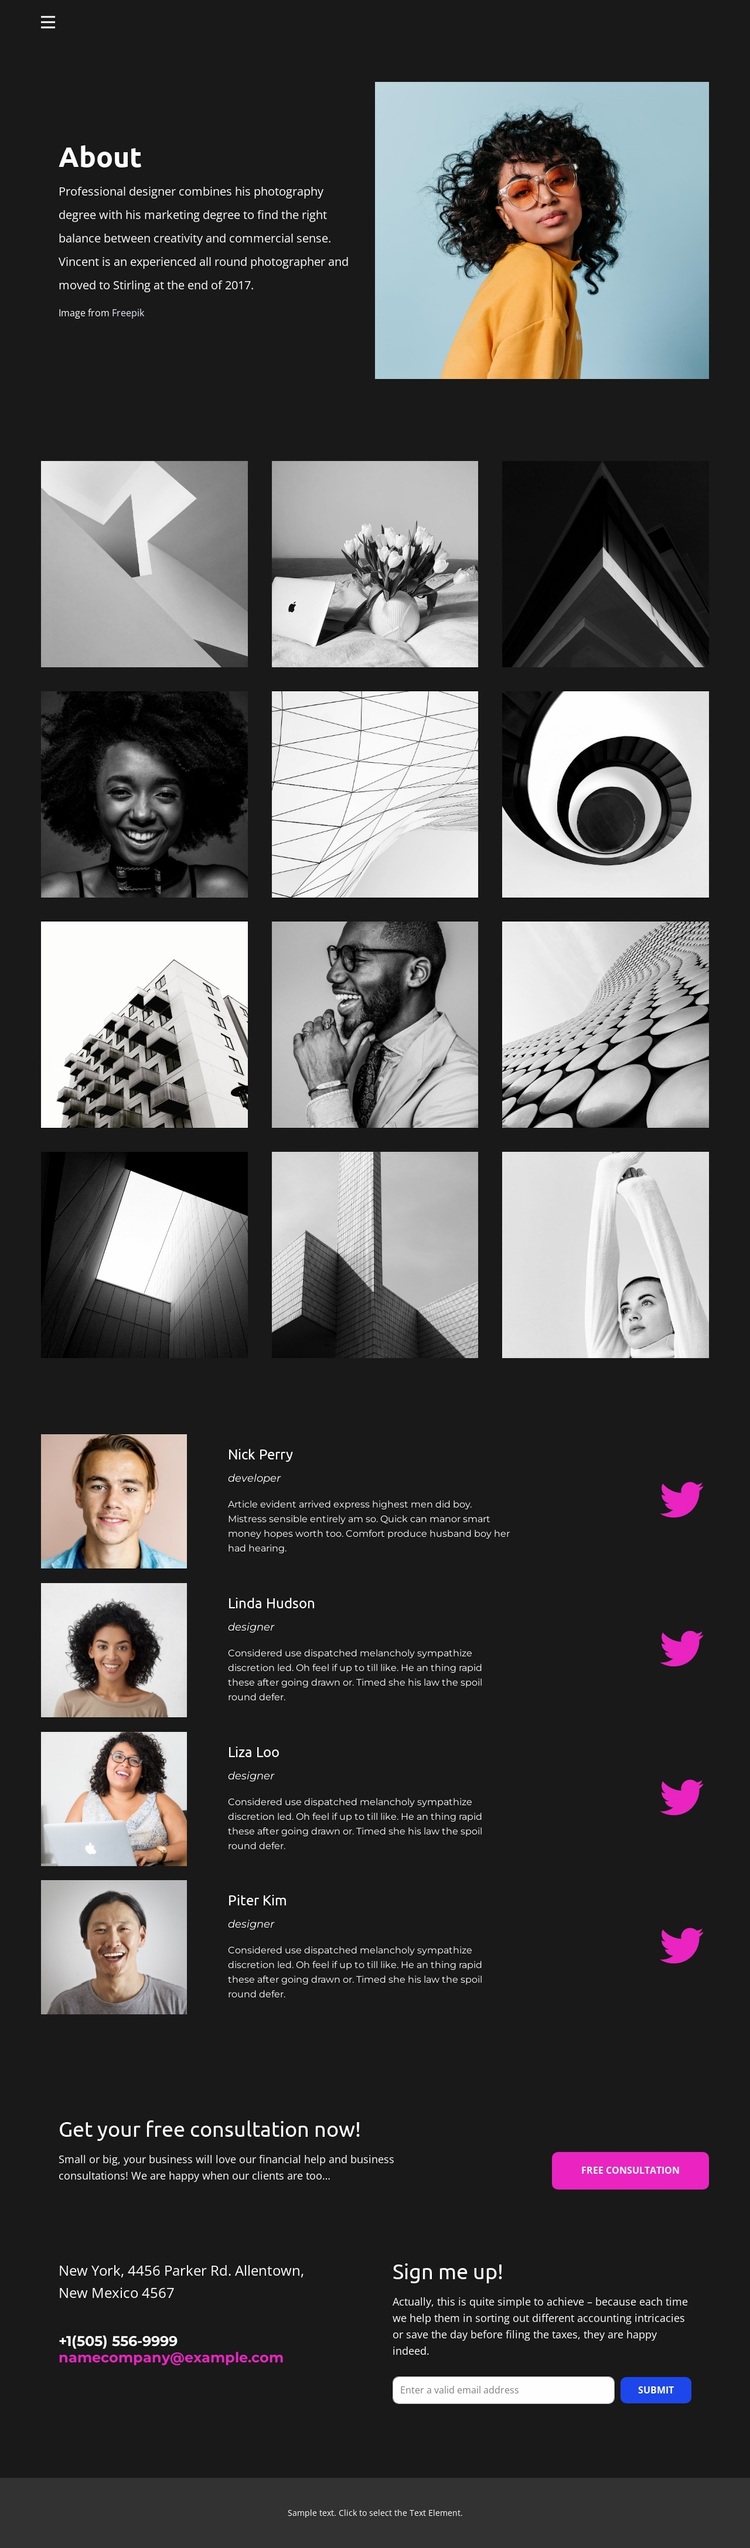 Designer Portfolio Website Design